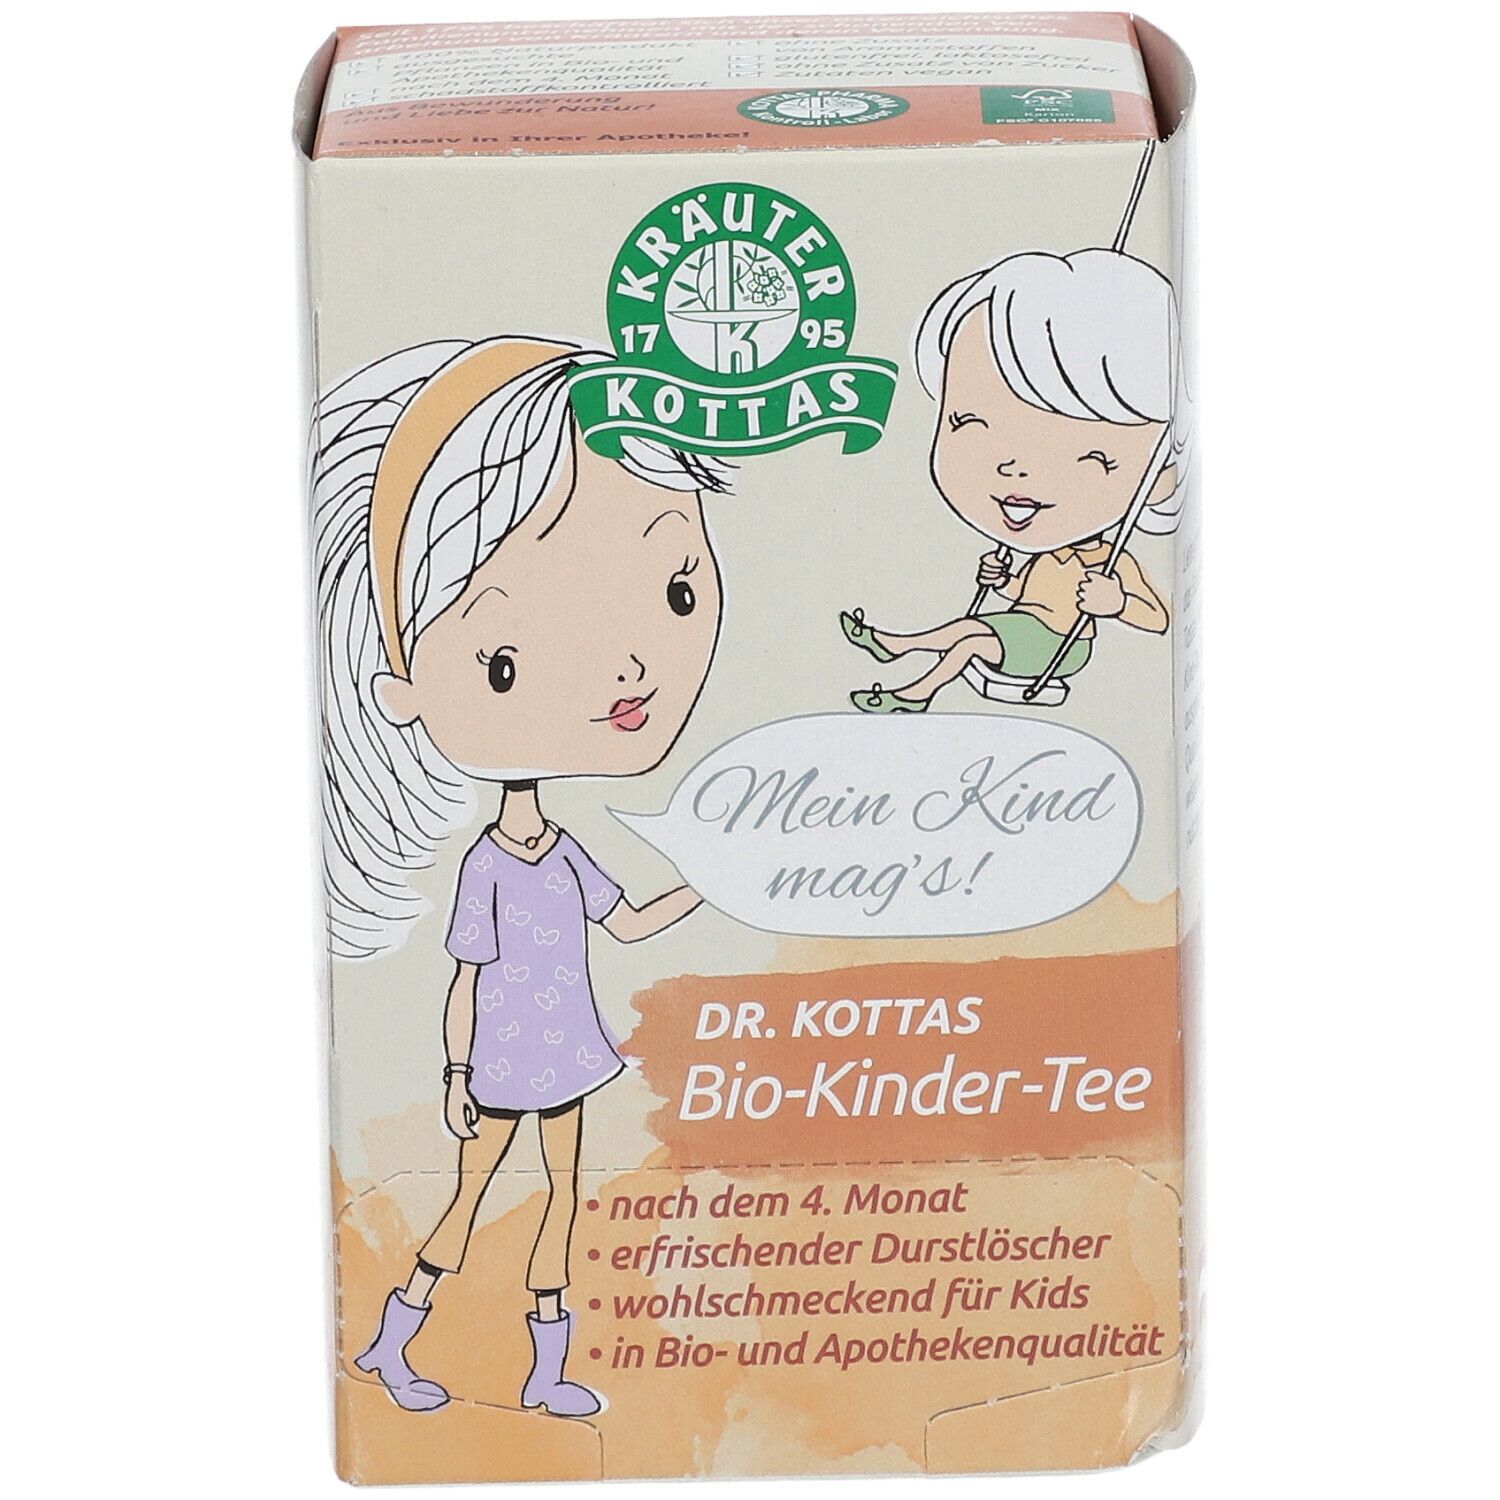 DR. KOTTAS Bio-Kinder-Tee